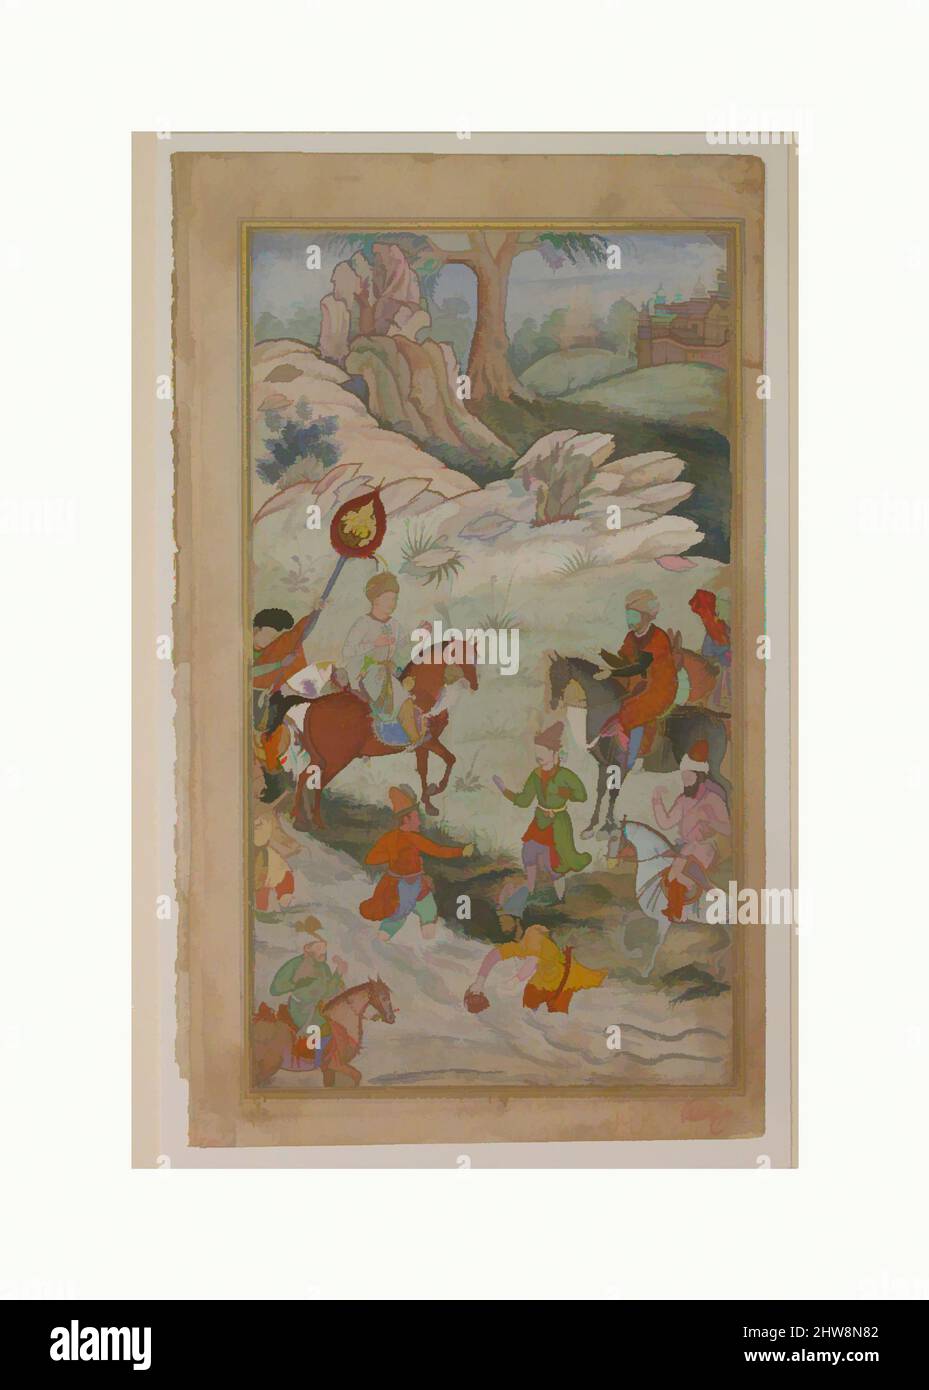 Arte ispirata da incontro tra Babur e Sultano 'Ali Mirza vicino Samarqand', Folio da una Baburnama (il Libro di Babur), ca. 1590, made in present-day Pakistan, probabilmente Lahore, inchiostro, acquerello opaco, e oro su carta, pagina: 10 1/2 x 6 1/4 in. (26,6 x 15,9 cm), Codices, le memorie, opere classiche modernizzate da Artotop con un tuffo di modernità. Forme, colore e valore, impatto visivo accattivante sulle emozioni artistiche attraverso la libertà delle opere d'arte in modo contemporaneo. Un messaggio senza tempo che persegue una nuova direzione selvaggiamente creativa. Artisti che si rivolgono al supporto digitale e creano l'NFT Artotop Foto Stock